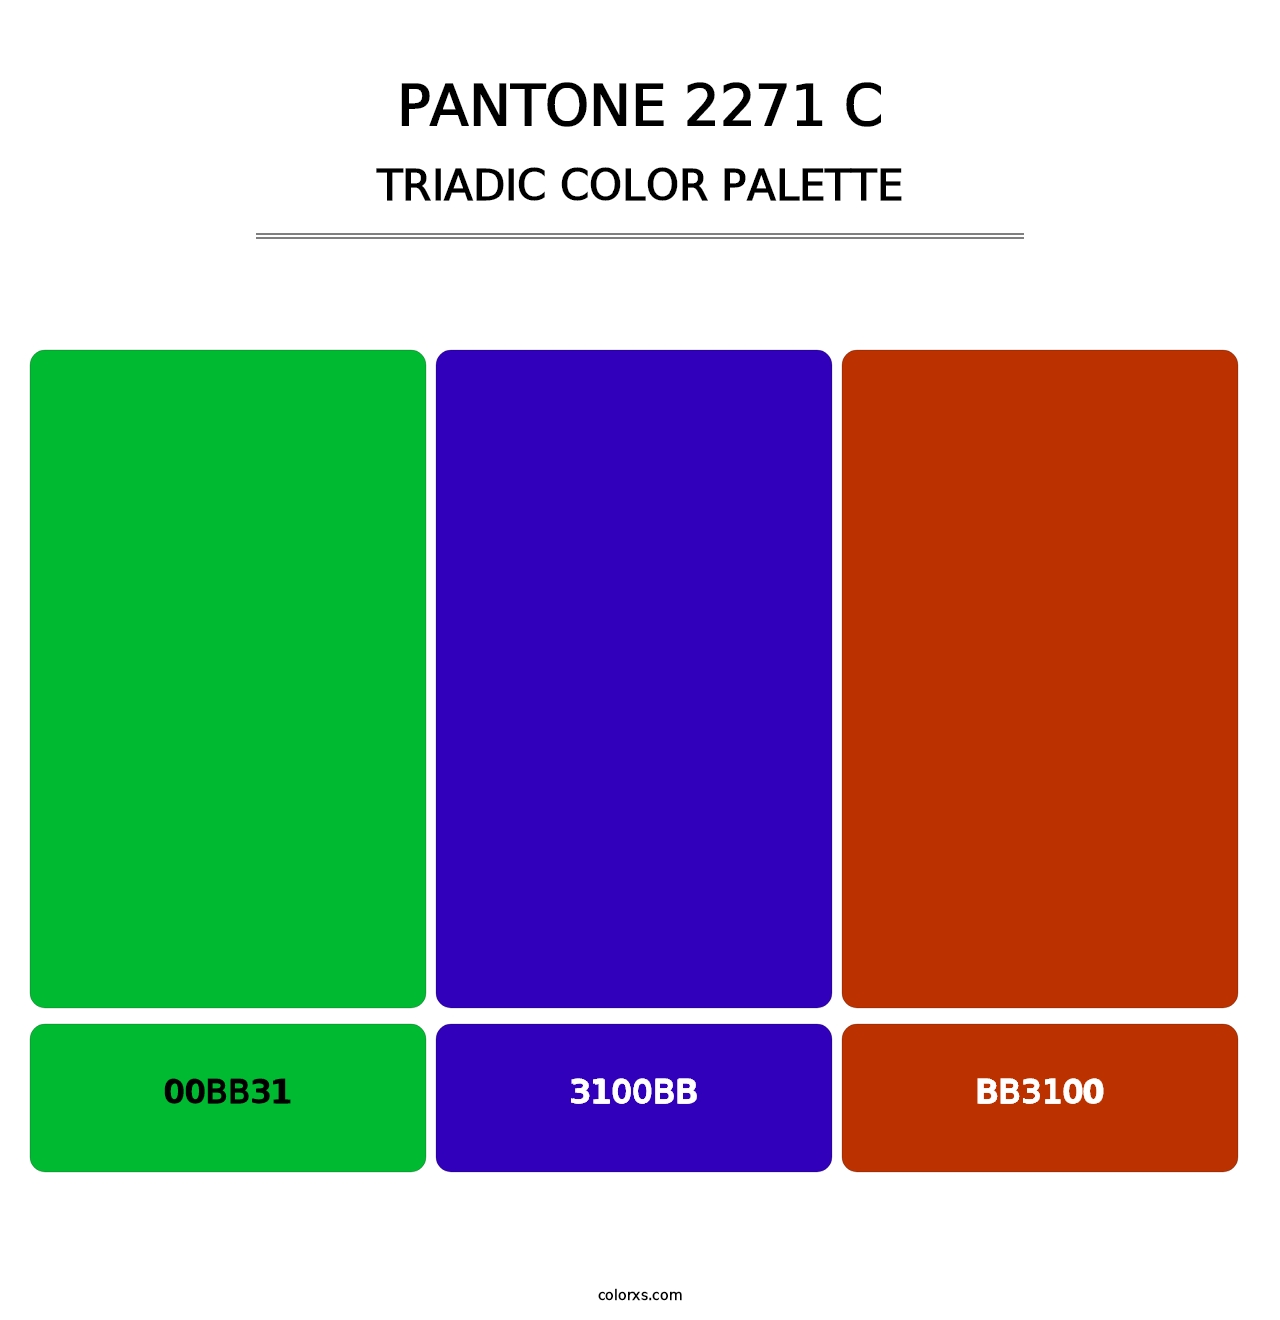 PANTONE 2271 C - Triadic Color Palette